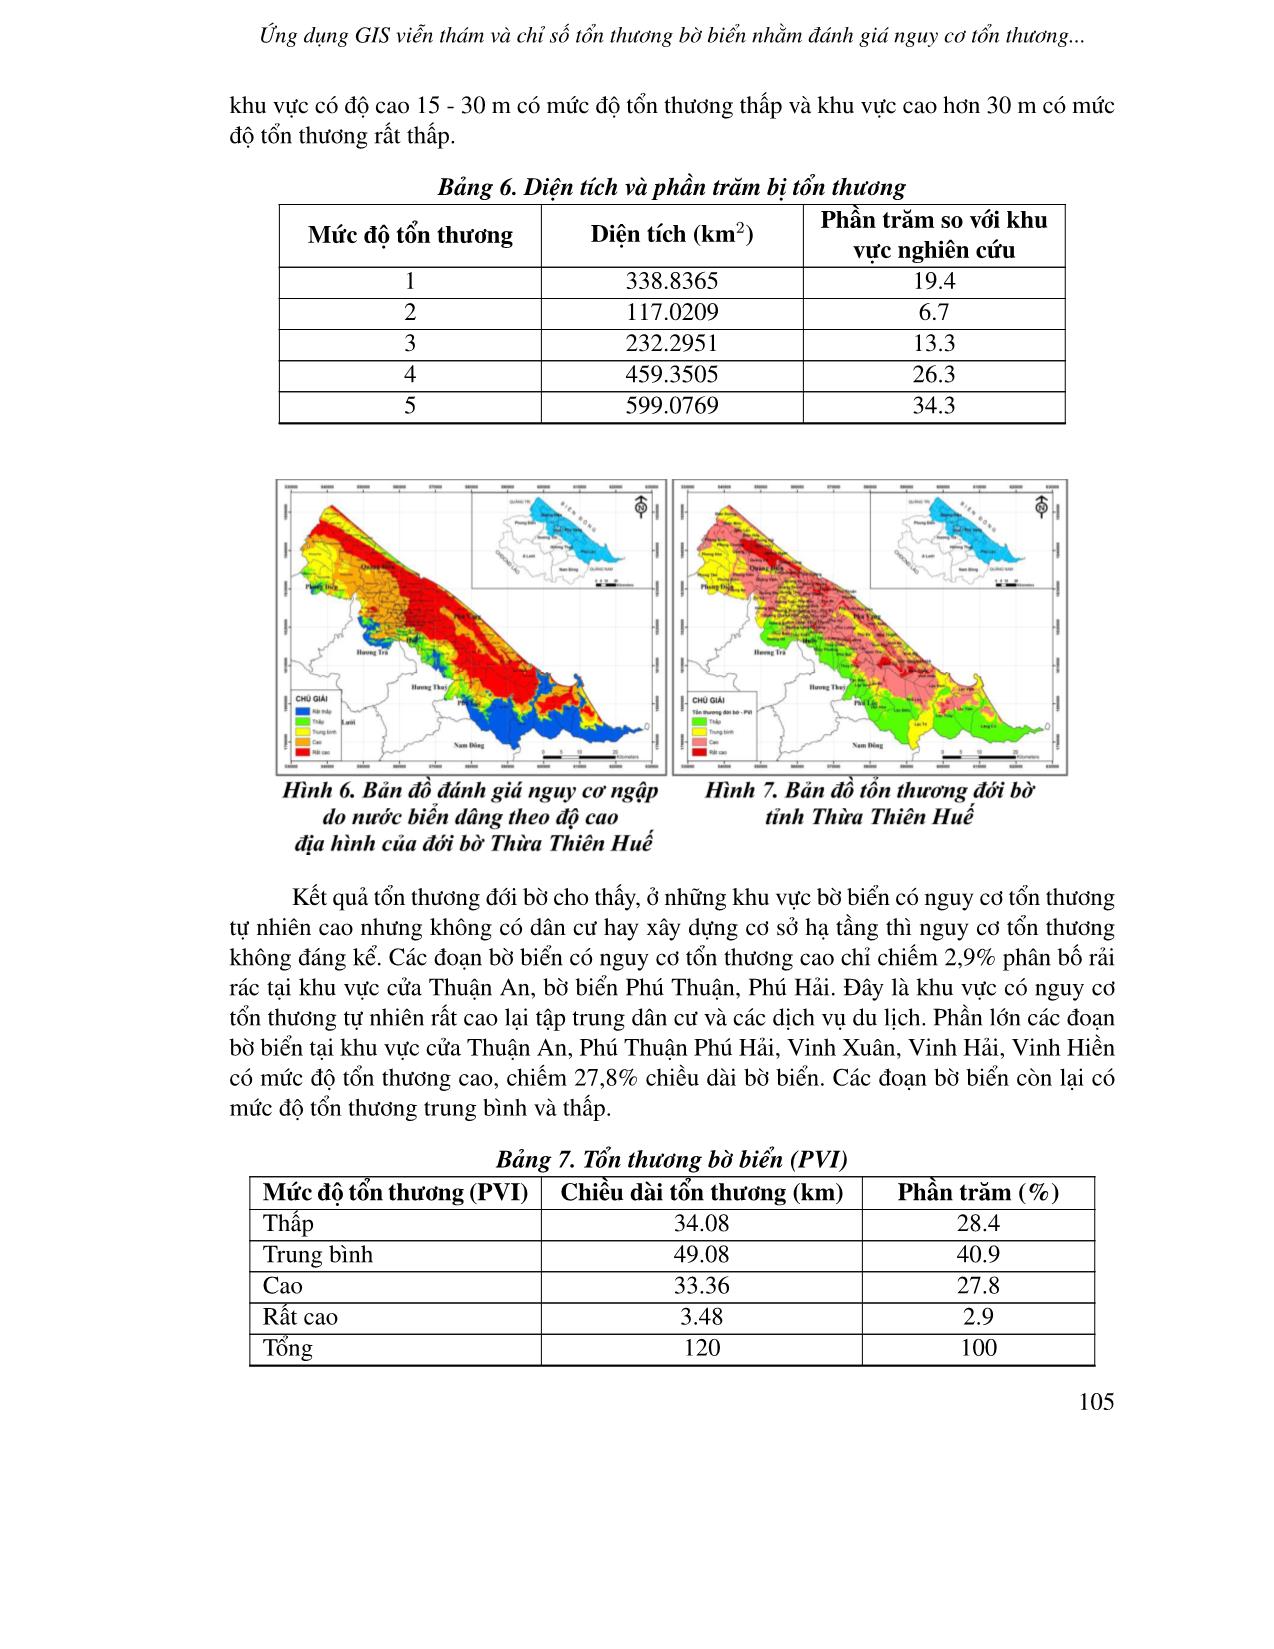 Ứng dụng GIS viễn thám và chỉ số tổn thương bờ biển nhằm đánh giá nguy cơ tổn thương đới bờ tỉnh Thừa Thiên Huế dưới ảnh hưởng của nước biển dâng trang 9